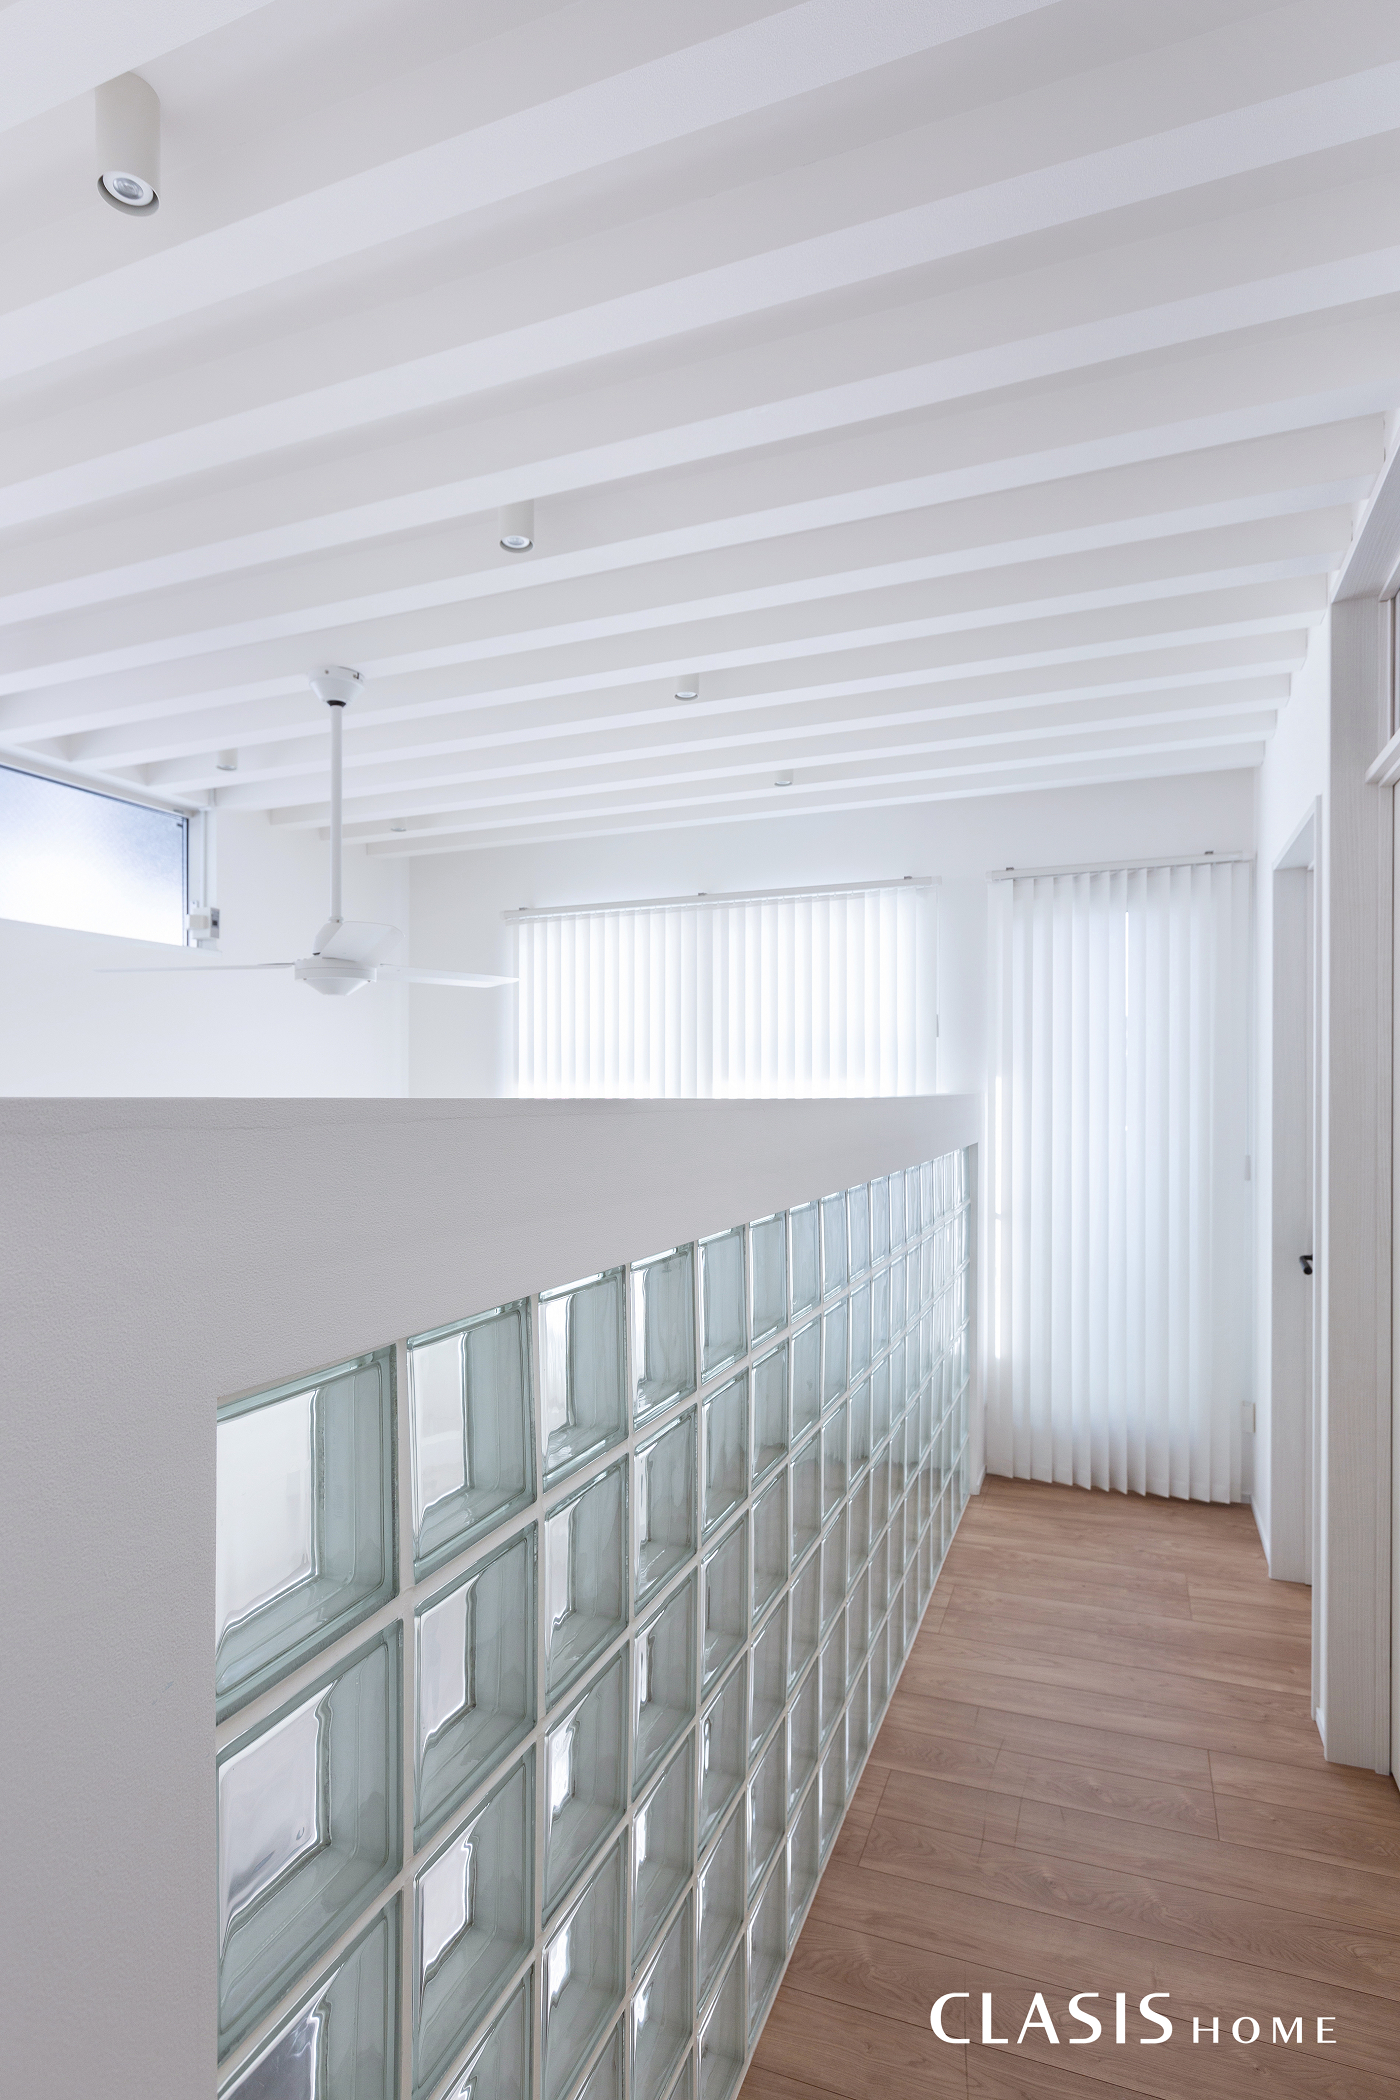 吹き抜けの2階部分腰壁には、透明感のあるガラスブロックを一部使用して、明るい室内にきらきらと光が反射します。